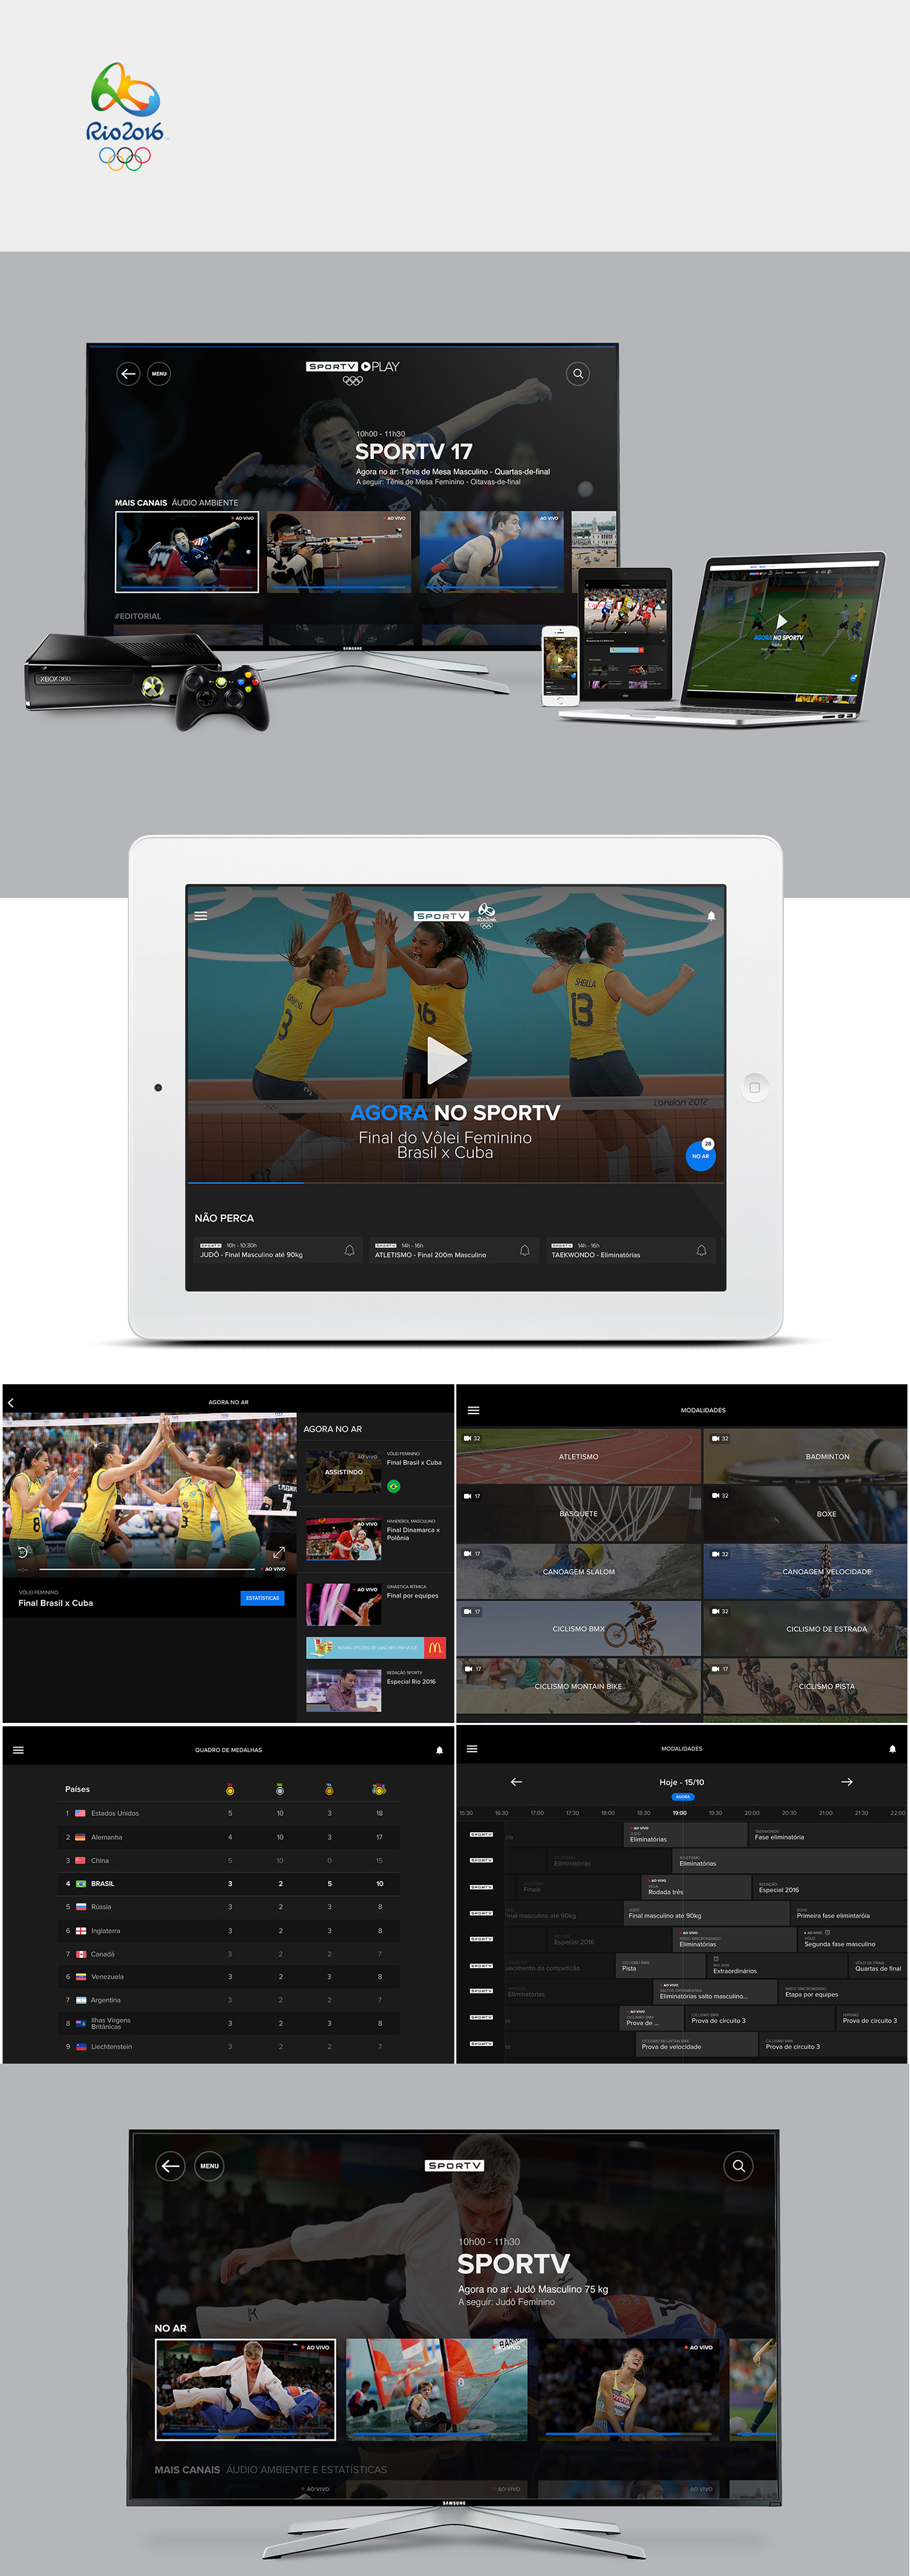 Olympic Games rio 2016 Olympic Games Rio design app design app ui UI ux